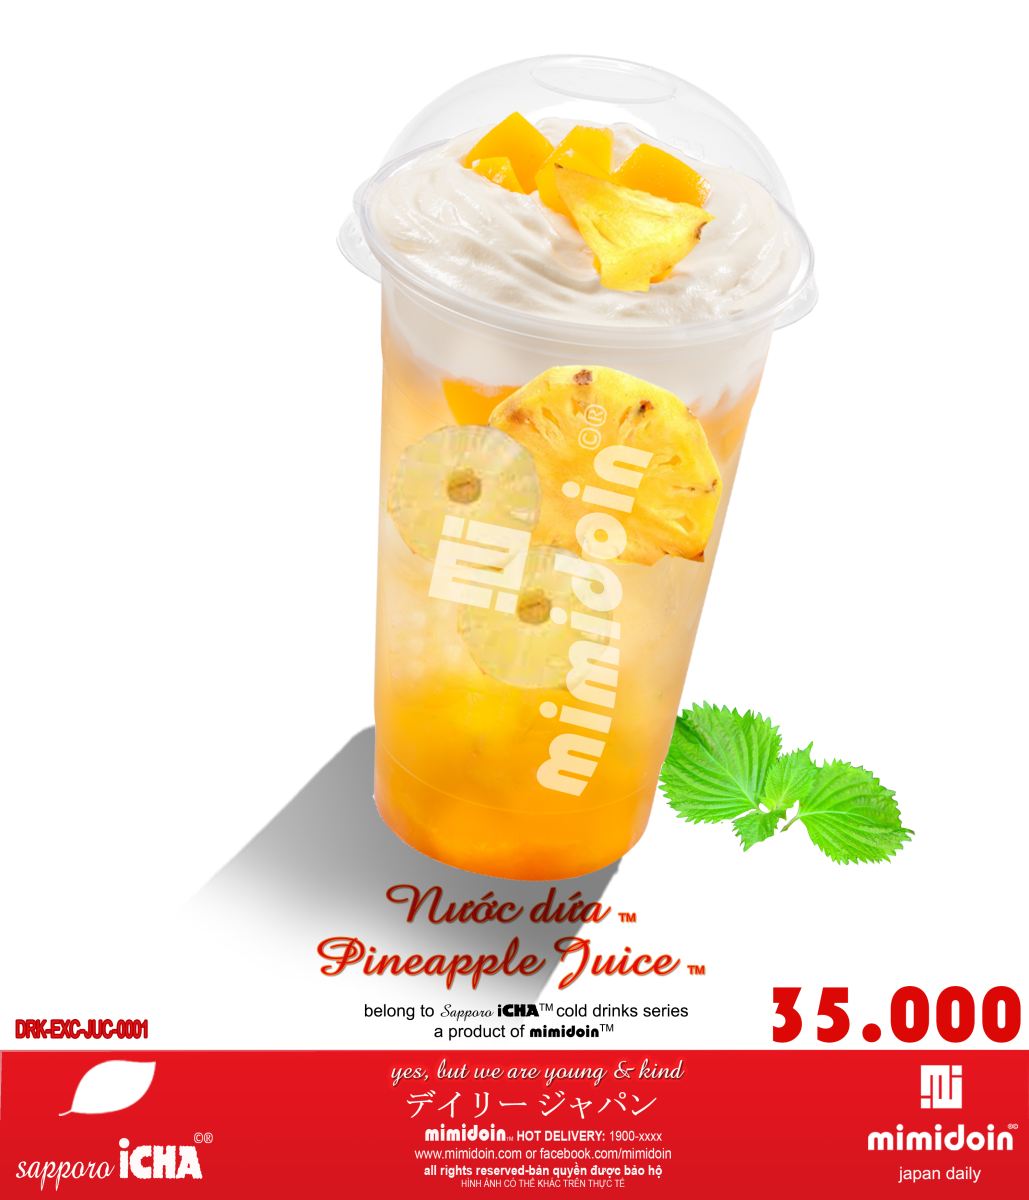 DRK-EXC-JUC-0001-Pineapple juice-Nước dứa